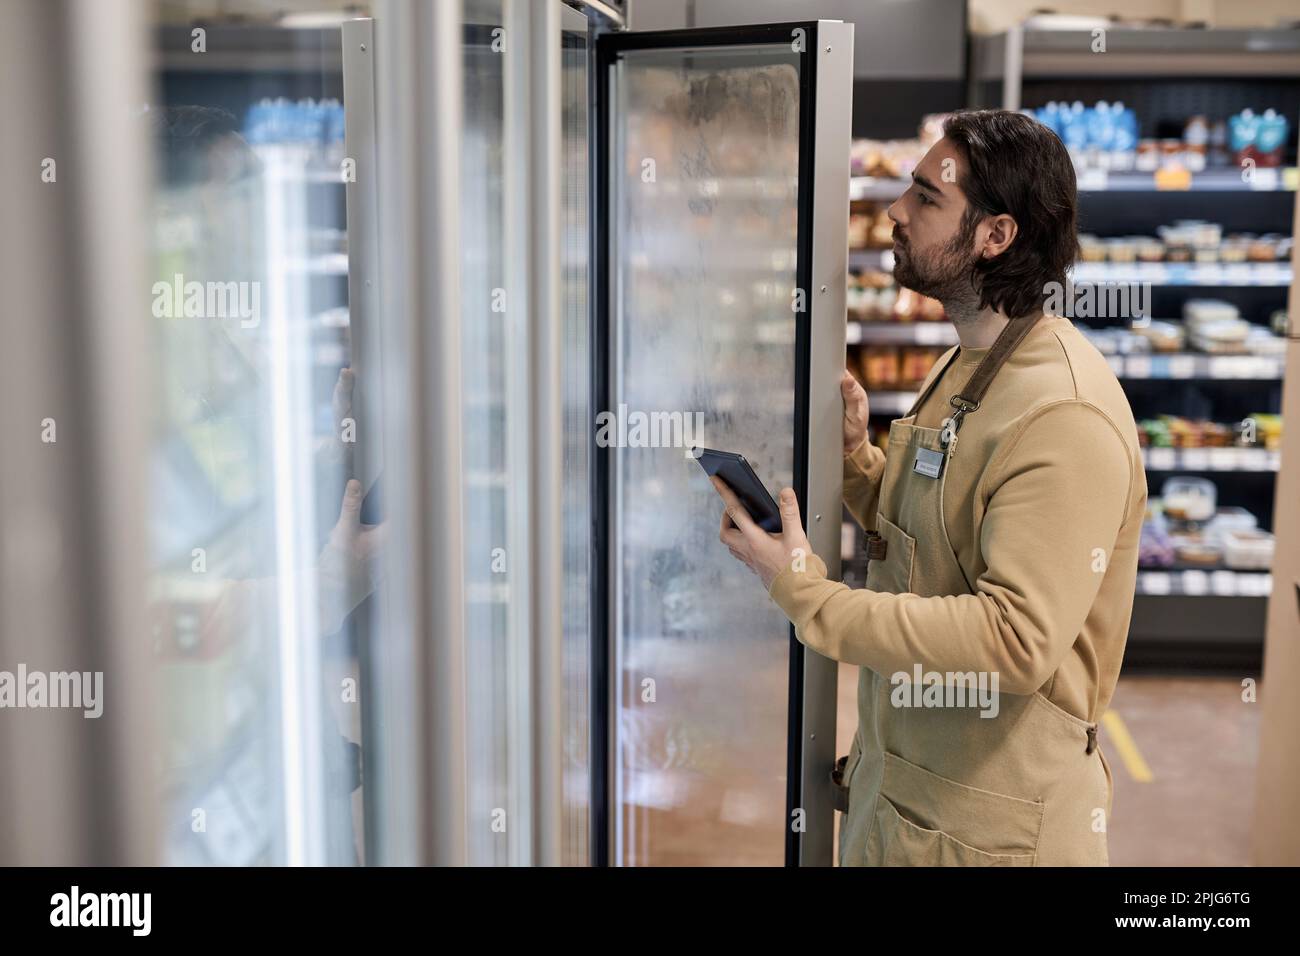 Seitliches Porträt eines männlichen Arbeiters im Supermarkt, der den Gefrierbestand inspiziert und ein digitales Tablet in der Hand hält Stockfoto